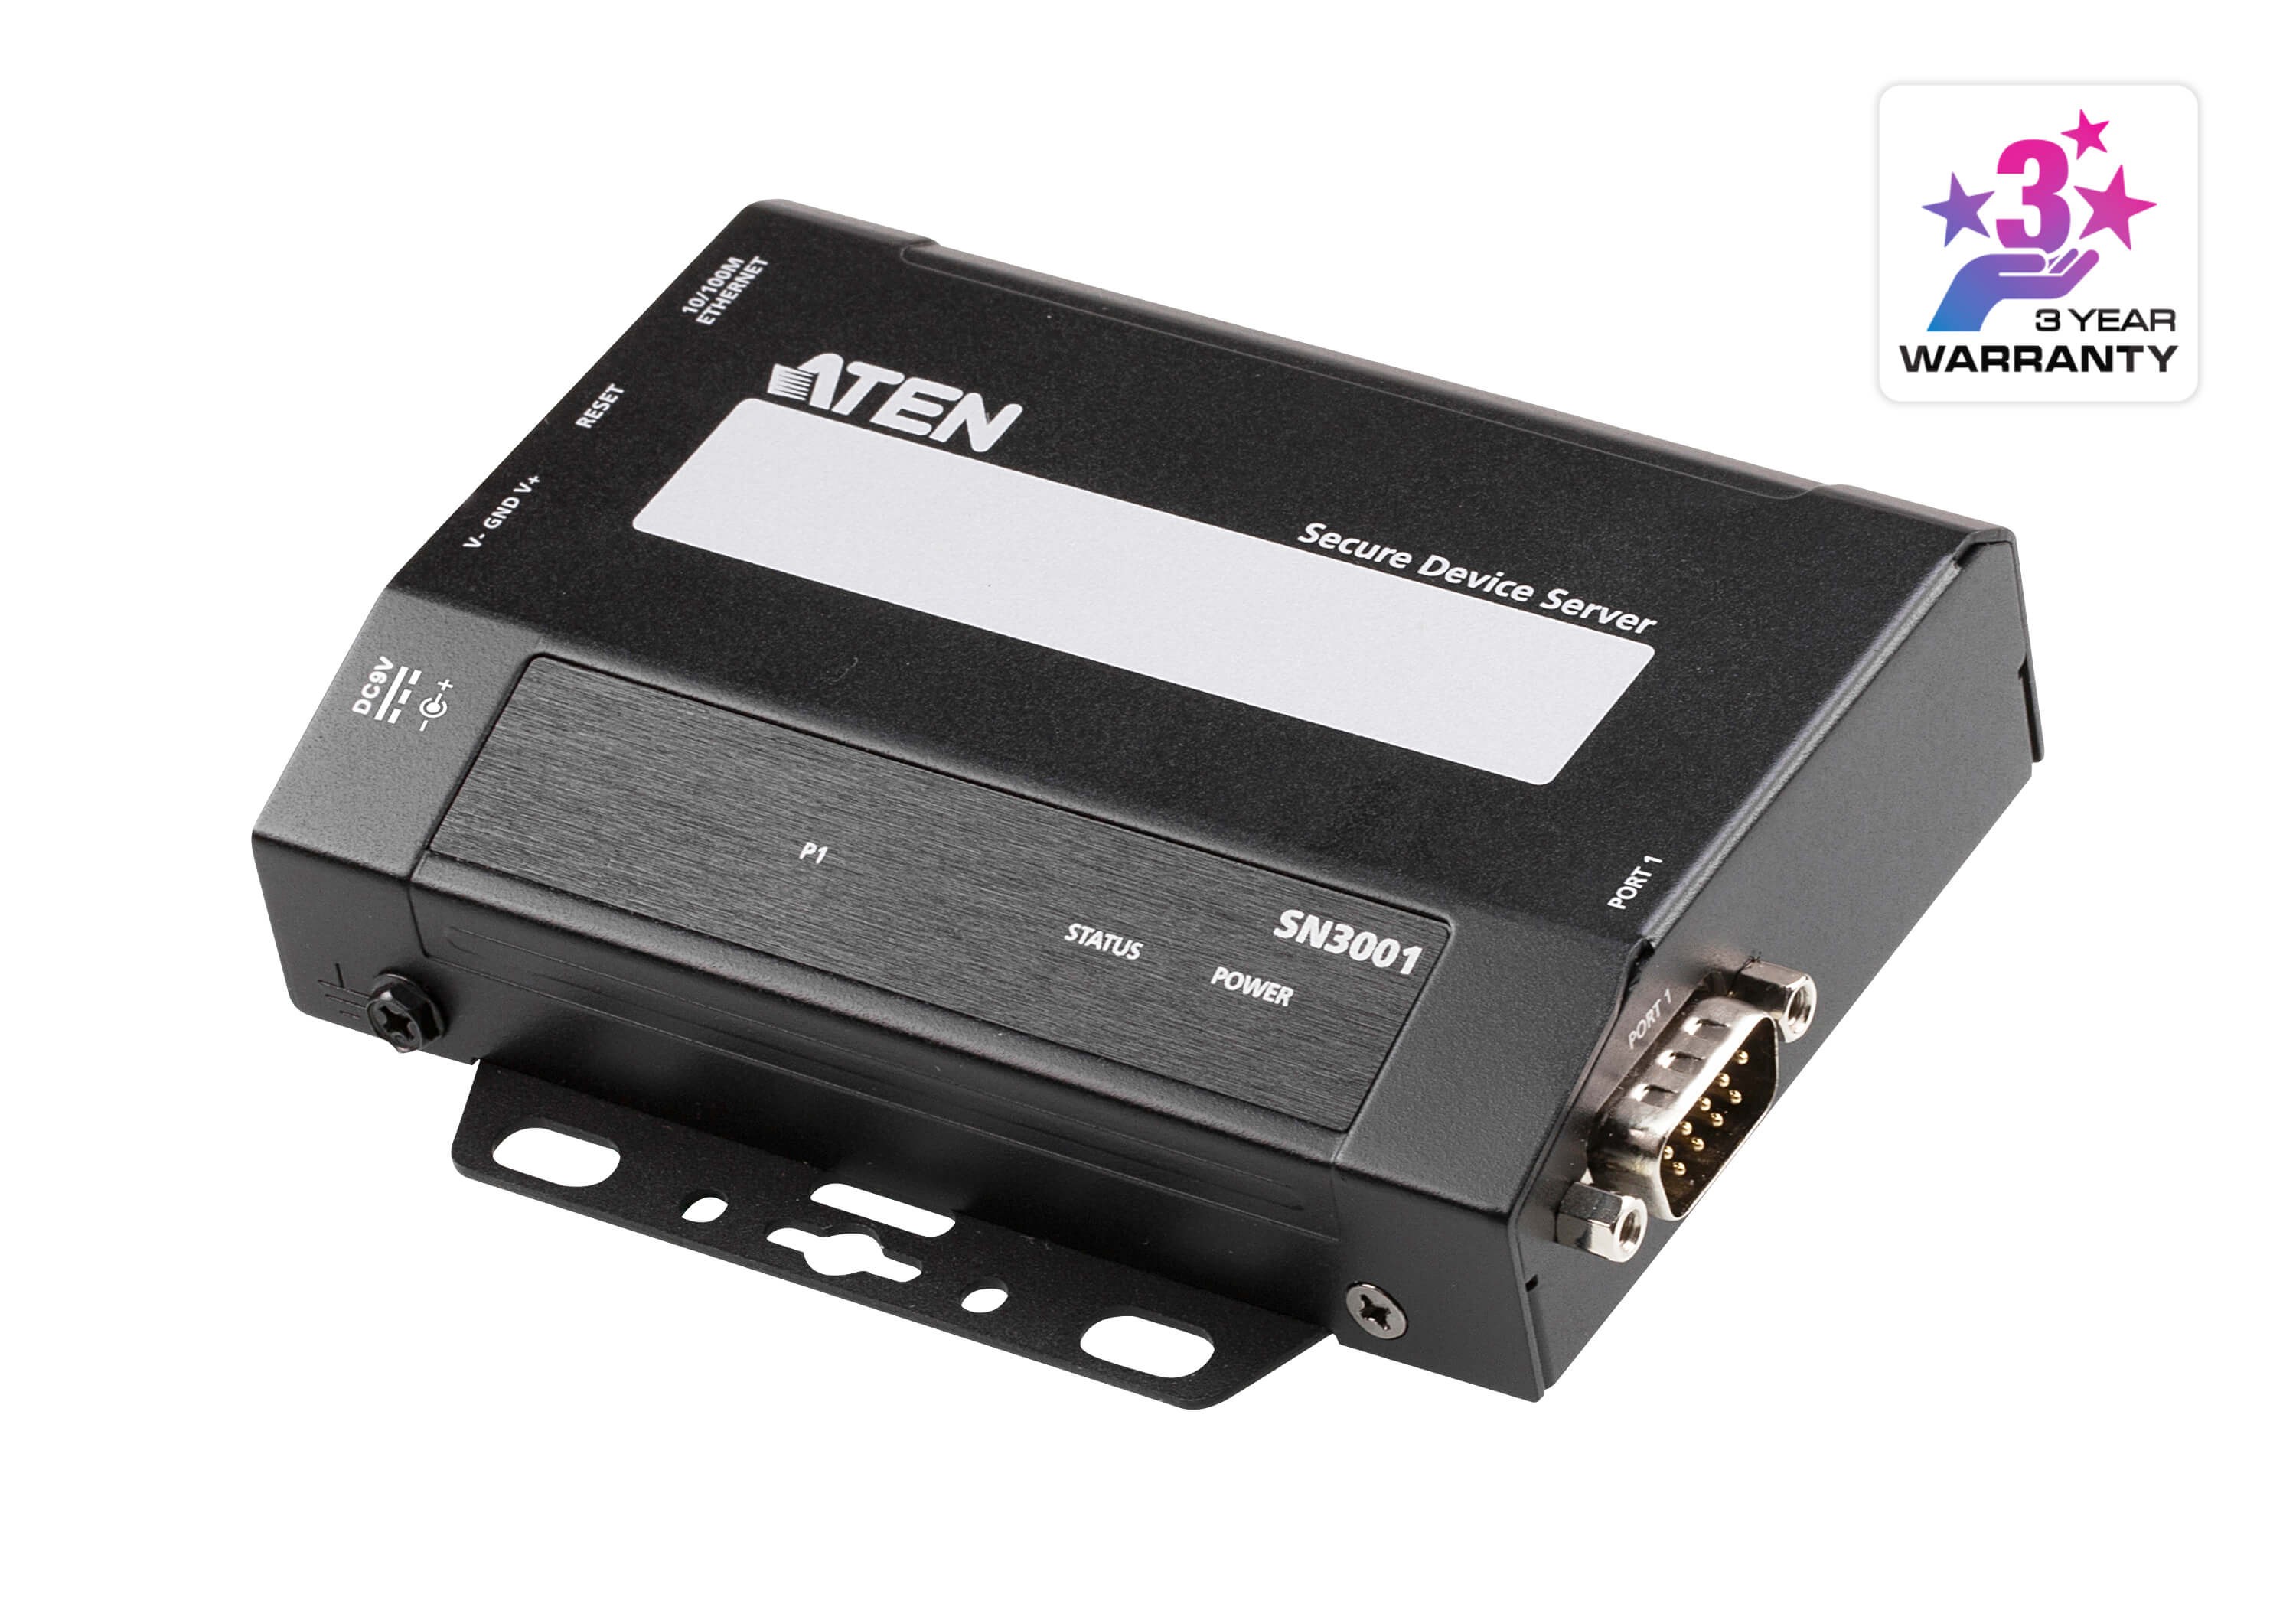 SN3001  1 puerto serie RS-232 para la transmisión segura de datos serie a través de Ethernet